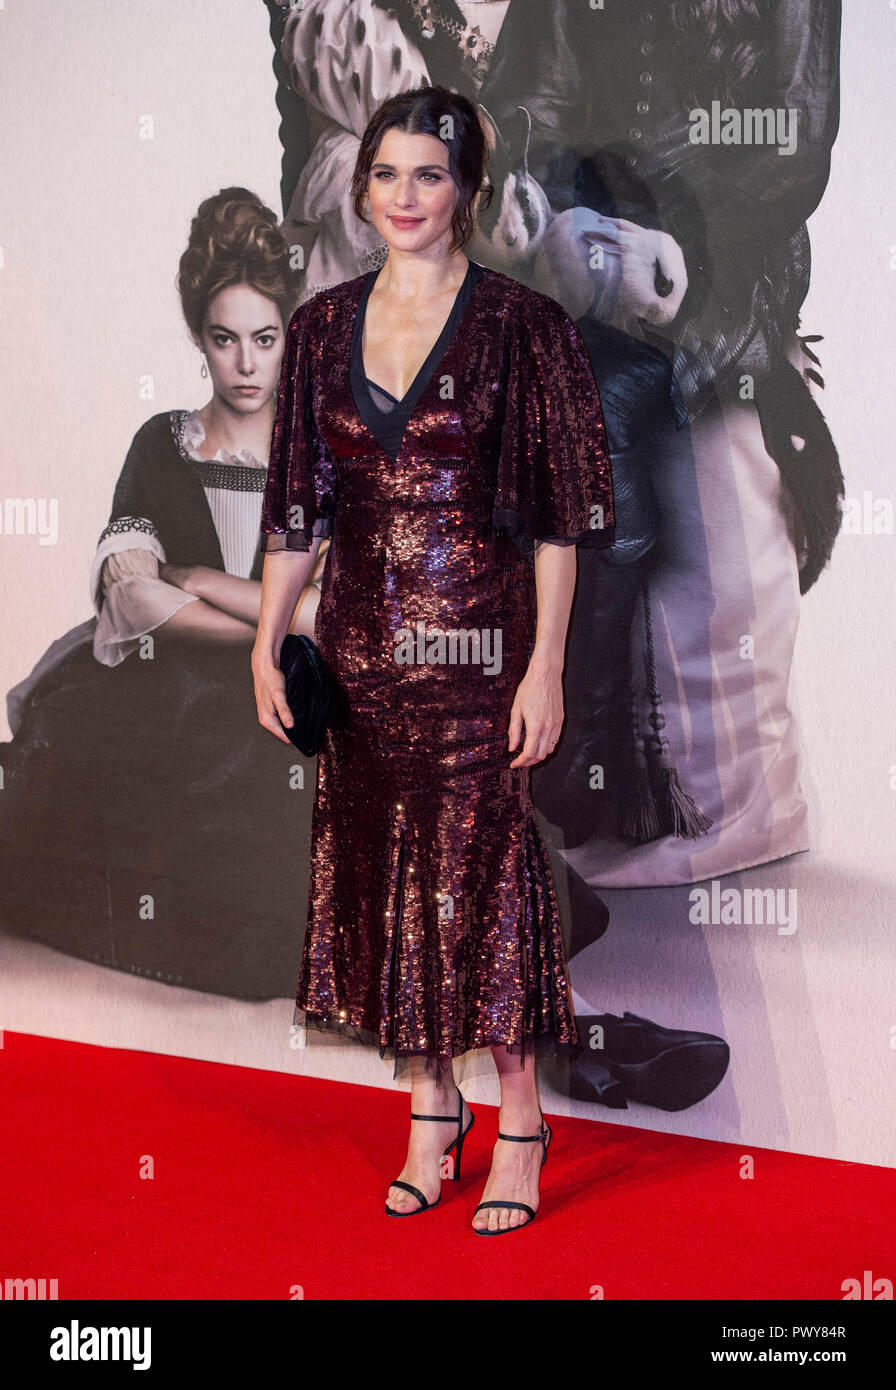 Londres, Royaume-Uni. 18 octobre, 2018. Rachel Weisz assiste à la première UK de la 'Favorite' & American Express à la 62e Gala BFI London Film Festival le 18 octobre 2018 à Londres, en Angleterre. Crédit : Gary Mitchell, GMP Media/Alamy Live News Banque D'Images